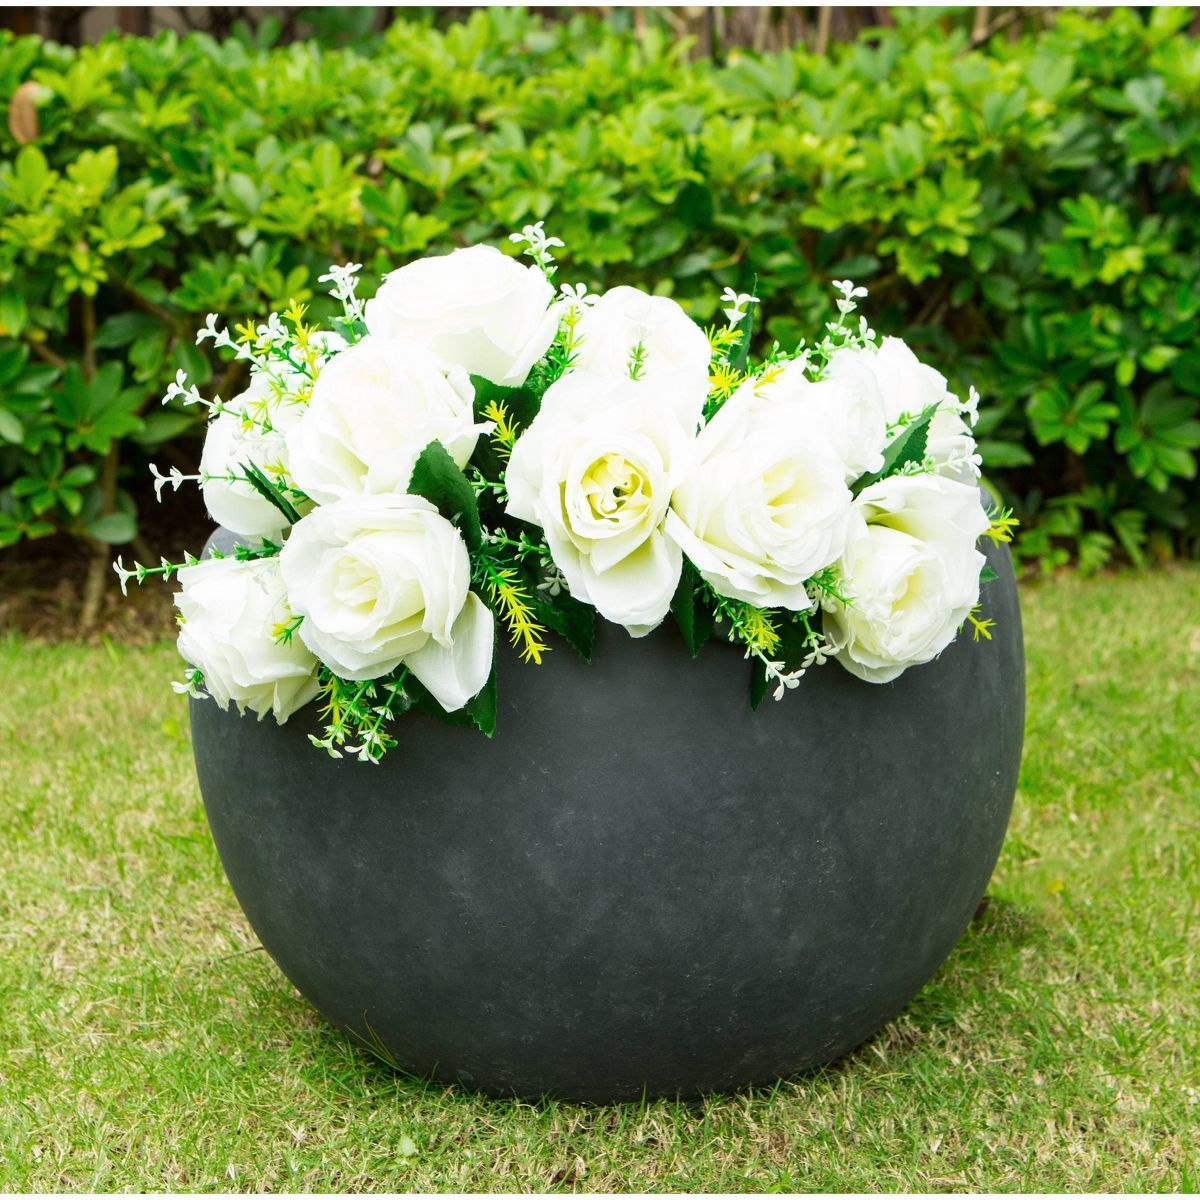 Rosemead Home & Garden, Inc. 13" Concrete/Fiberglass Elegant Bowl Indoor/Outdoor Planter Charcoal... | Target